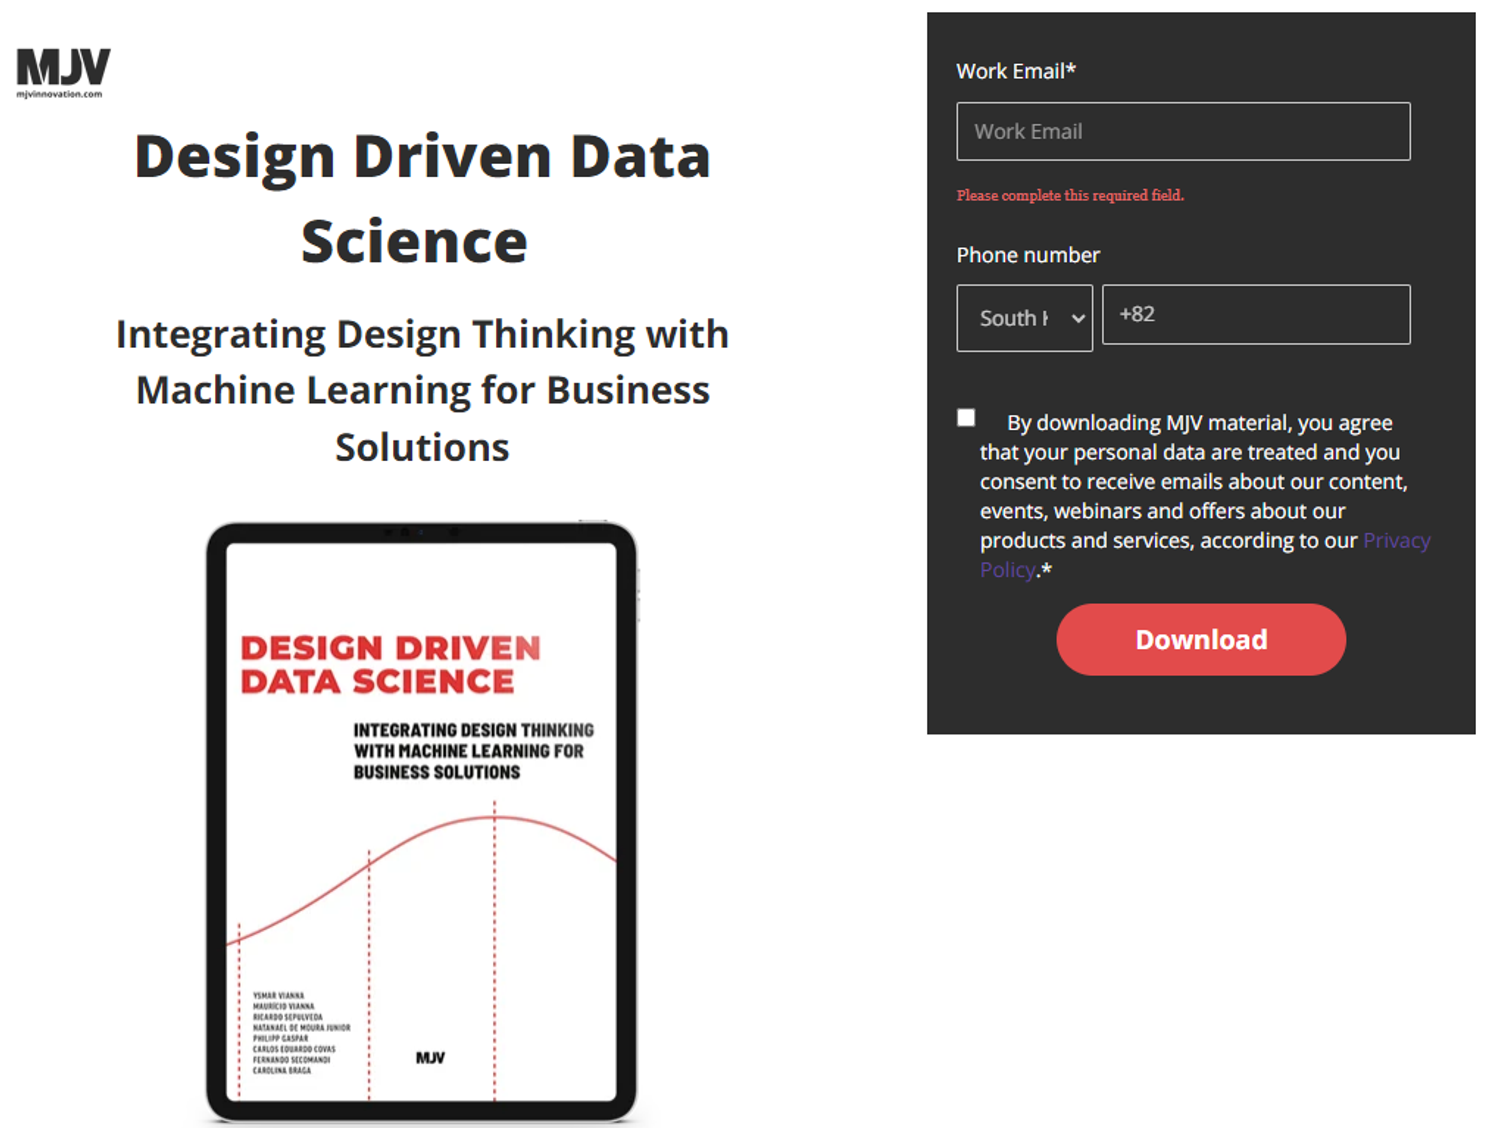 Design Driven Data Science